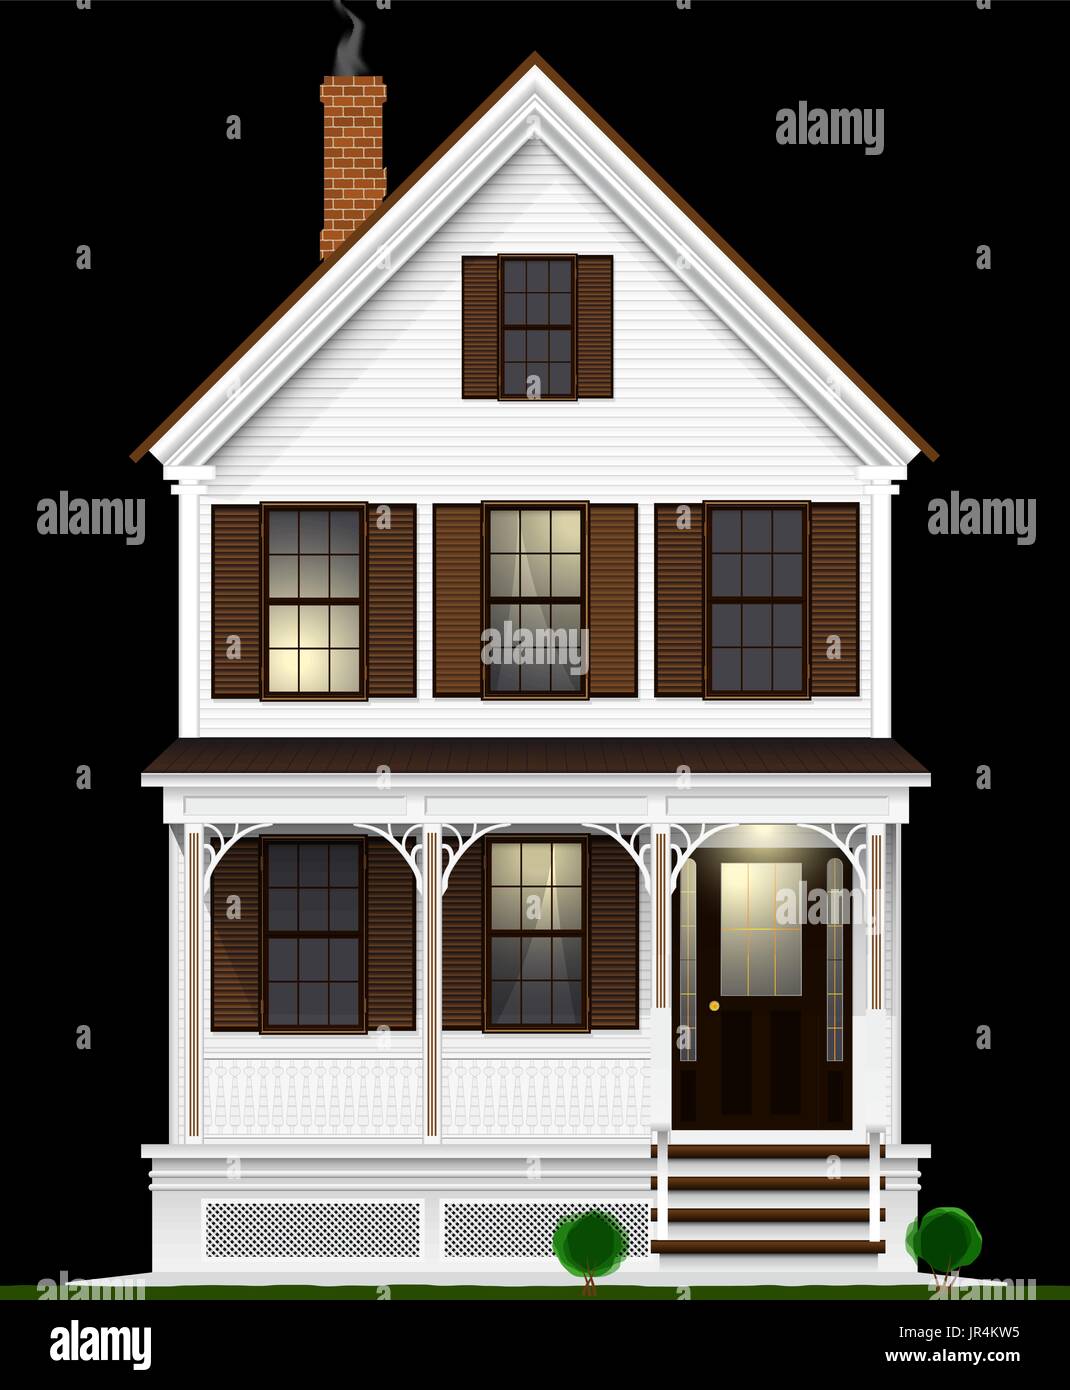 Un tipico e Americano classico a casa di legno verniciato con vernice bianca. Due piani, interrato e mansarda. Vista notturna. Illustrazione Vettoriale